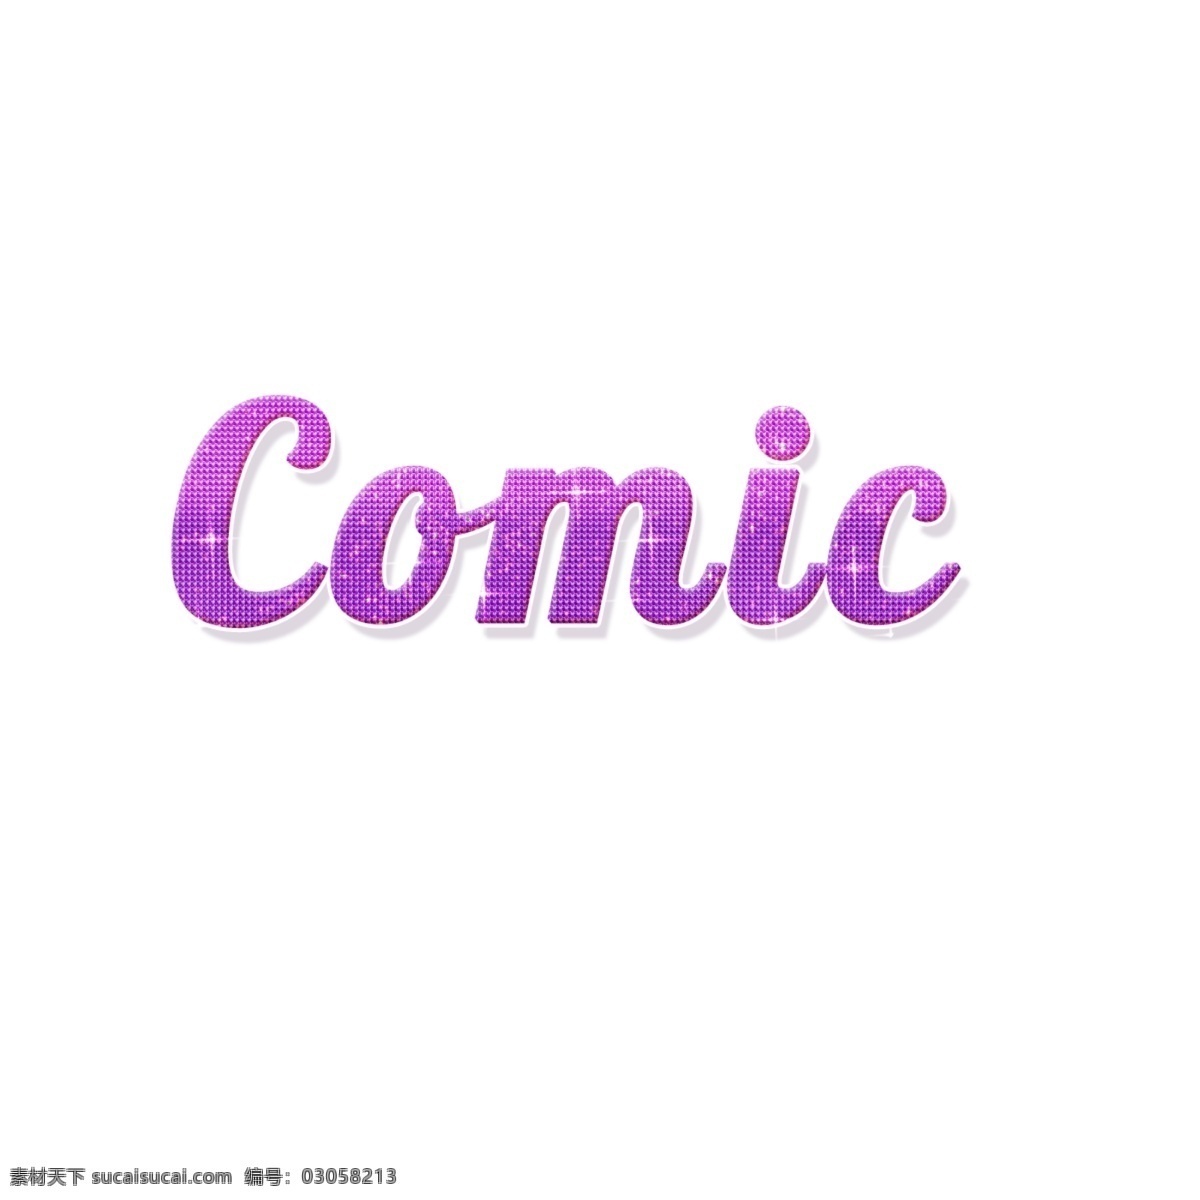 3d 漫画 字体 3d字体设计 3d字体 紫色字体 滑稽 创作的 紫色